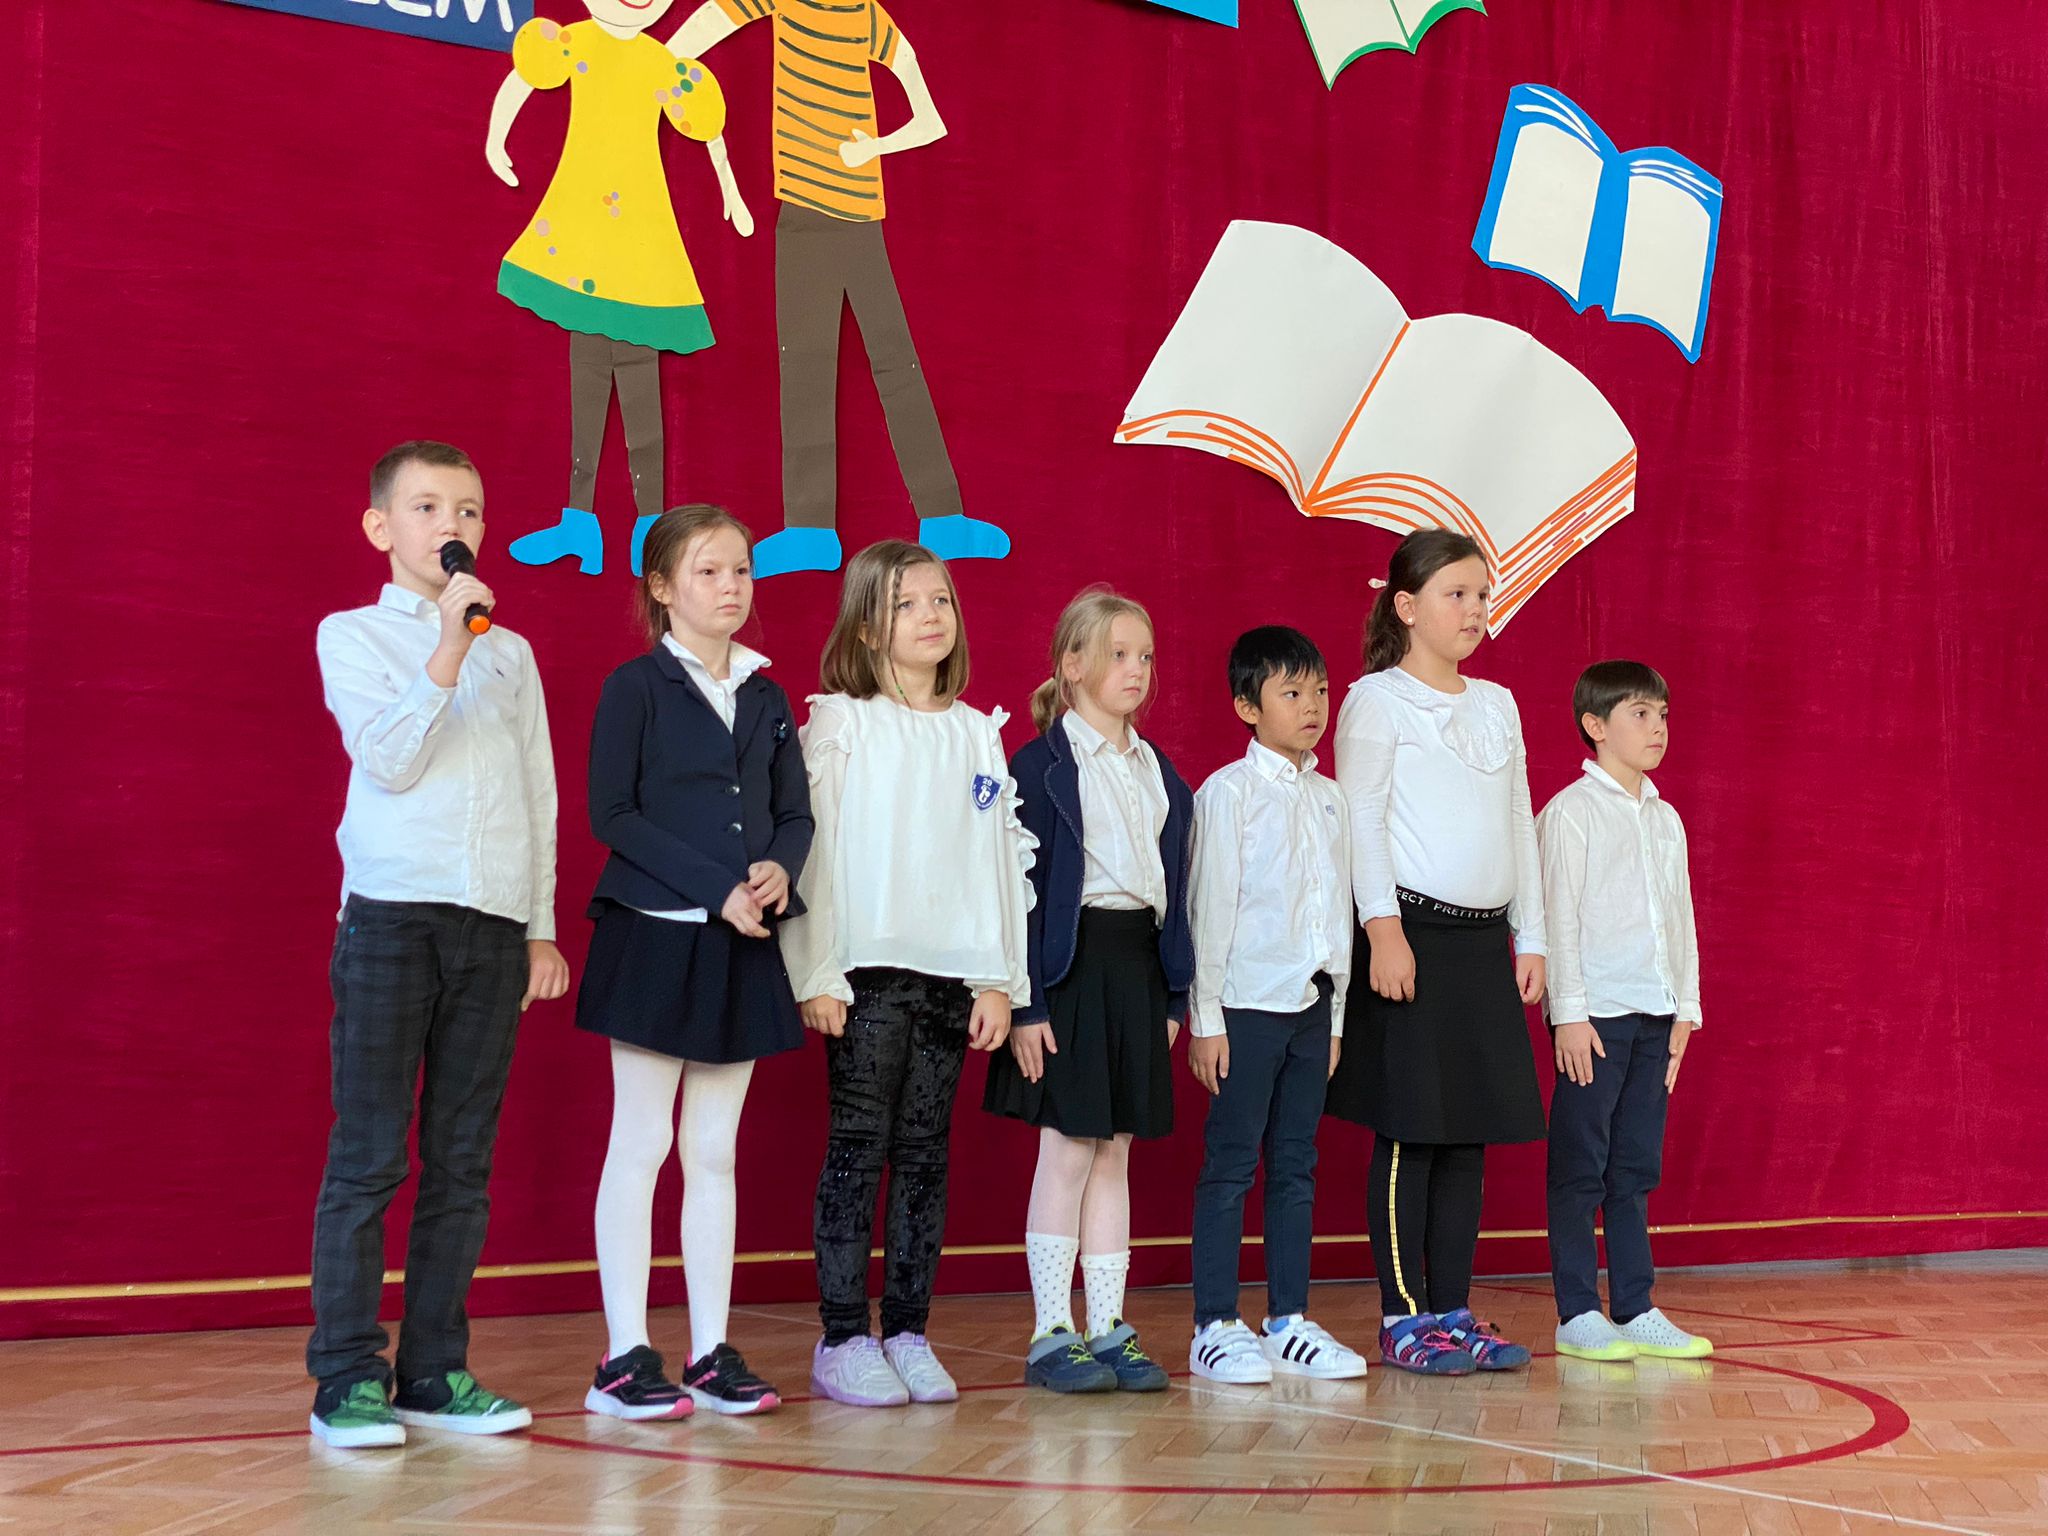 Dzieci ubrane na galowo stoją w szeregu. Jedno z dzieci ma mikrofon. Za nimi wisi kotara z przyczepioną ogromną książką.